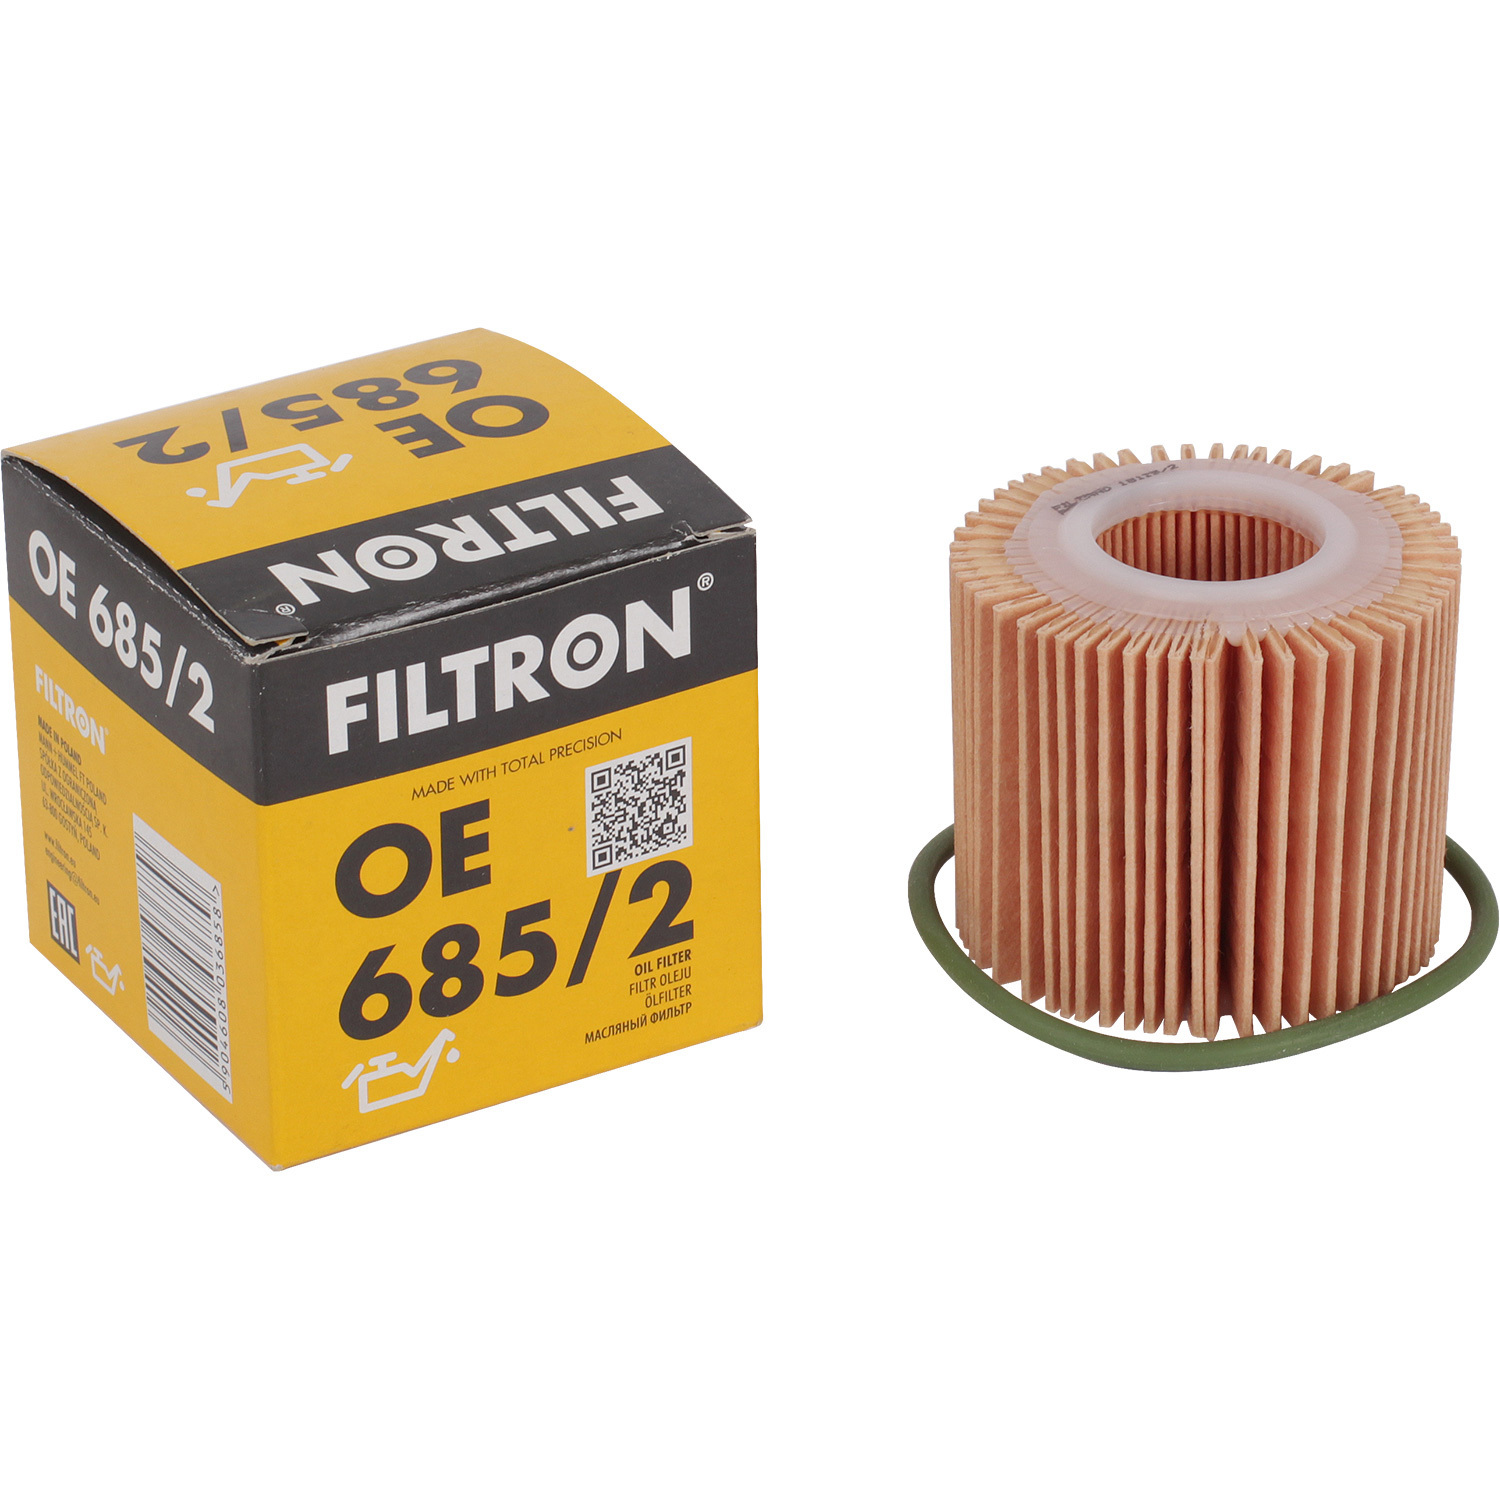 Фильтры Filtron Фильтр масляный Filtron OE6852 фильтры filtron фильтр масляный filtron op641